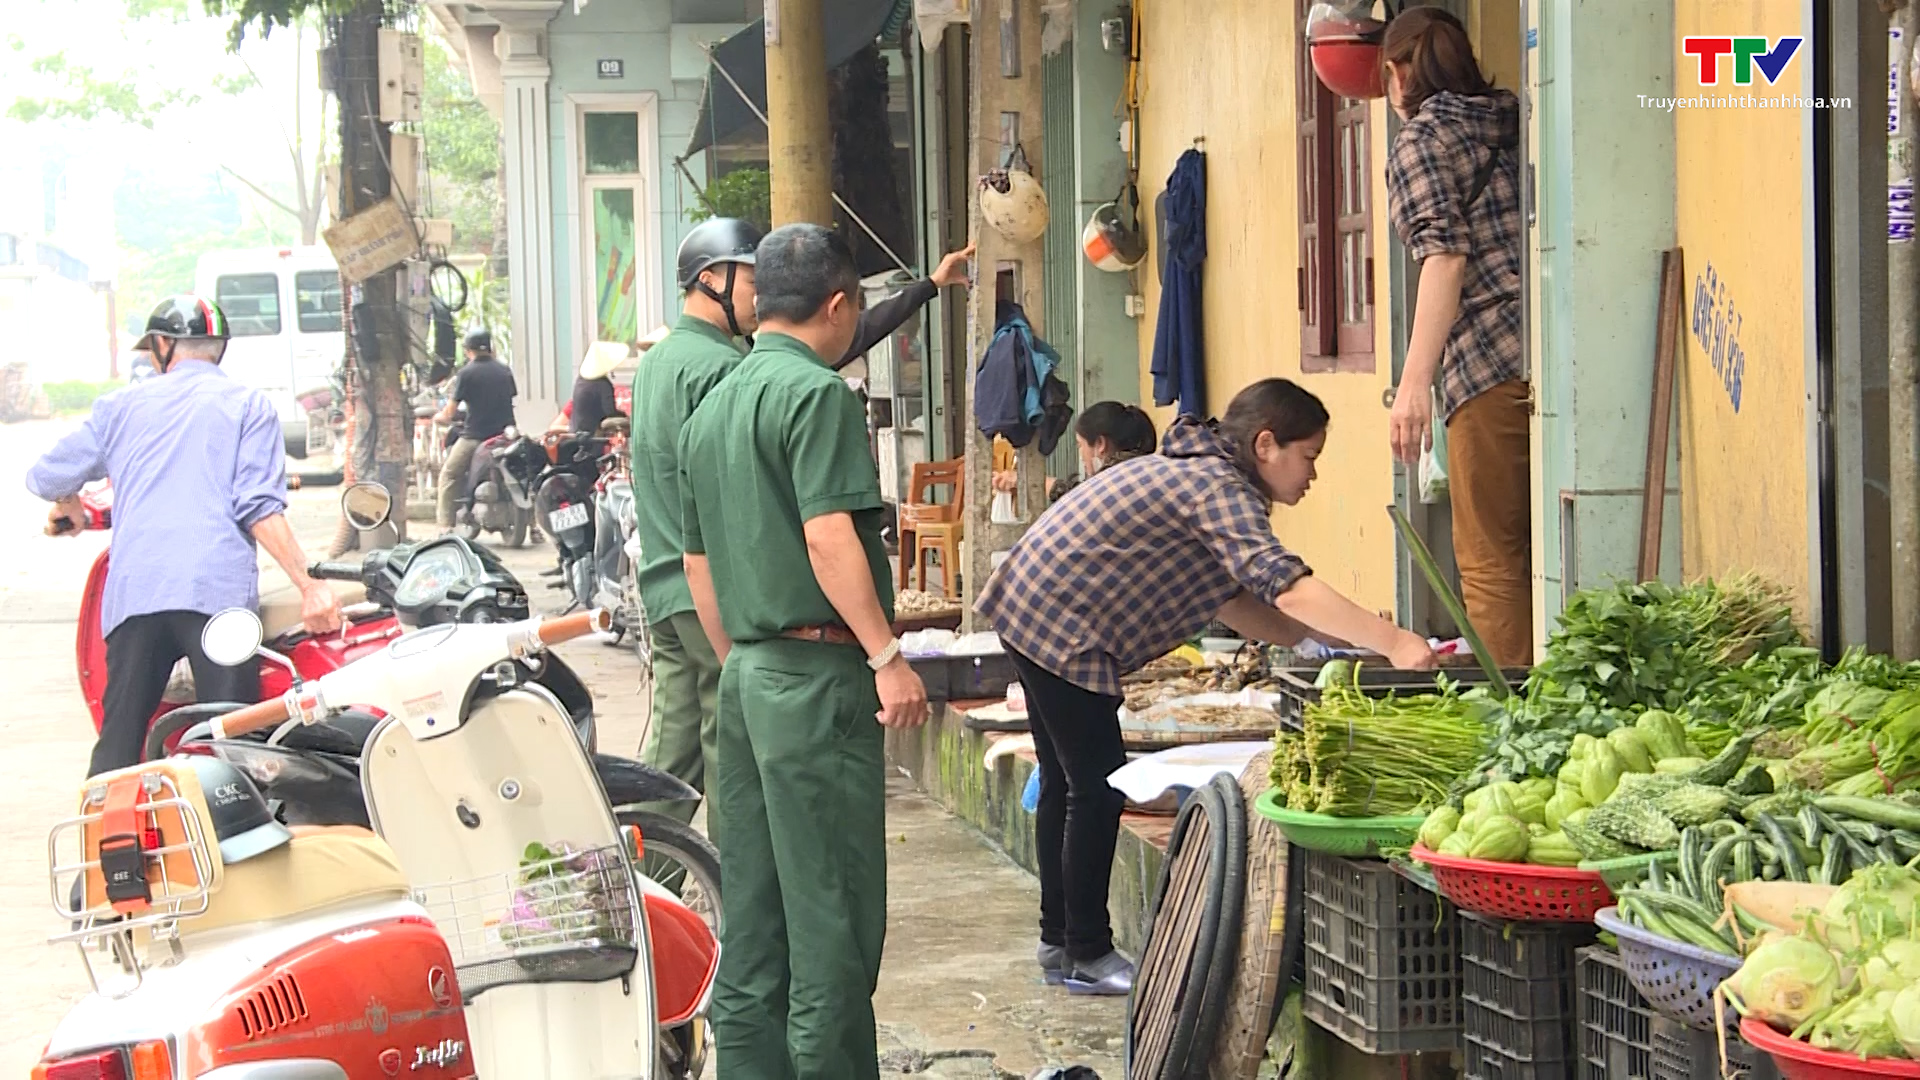 Thành phố Thanh Hoá tăng cường các giải pháp xoá bỏ chợ cóc, chợ tạm, xây dựng văn minh thương mại  - Ảnh 3.